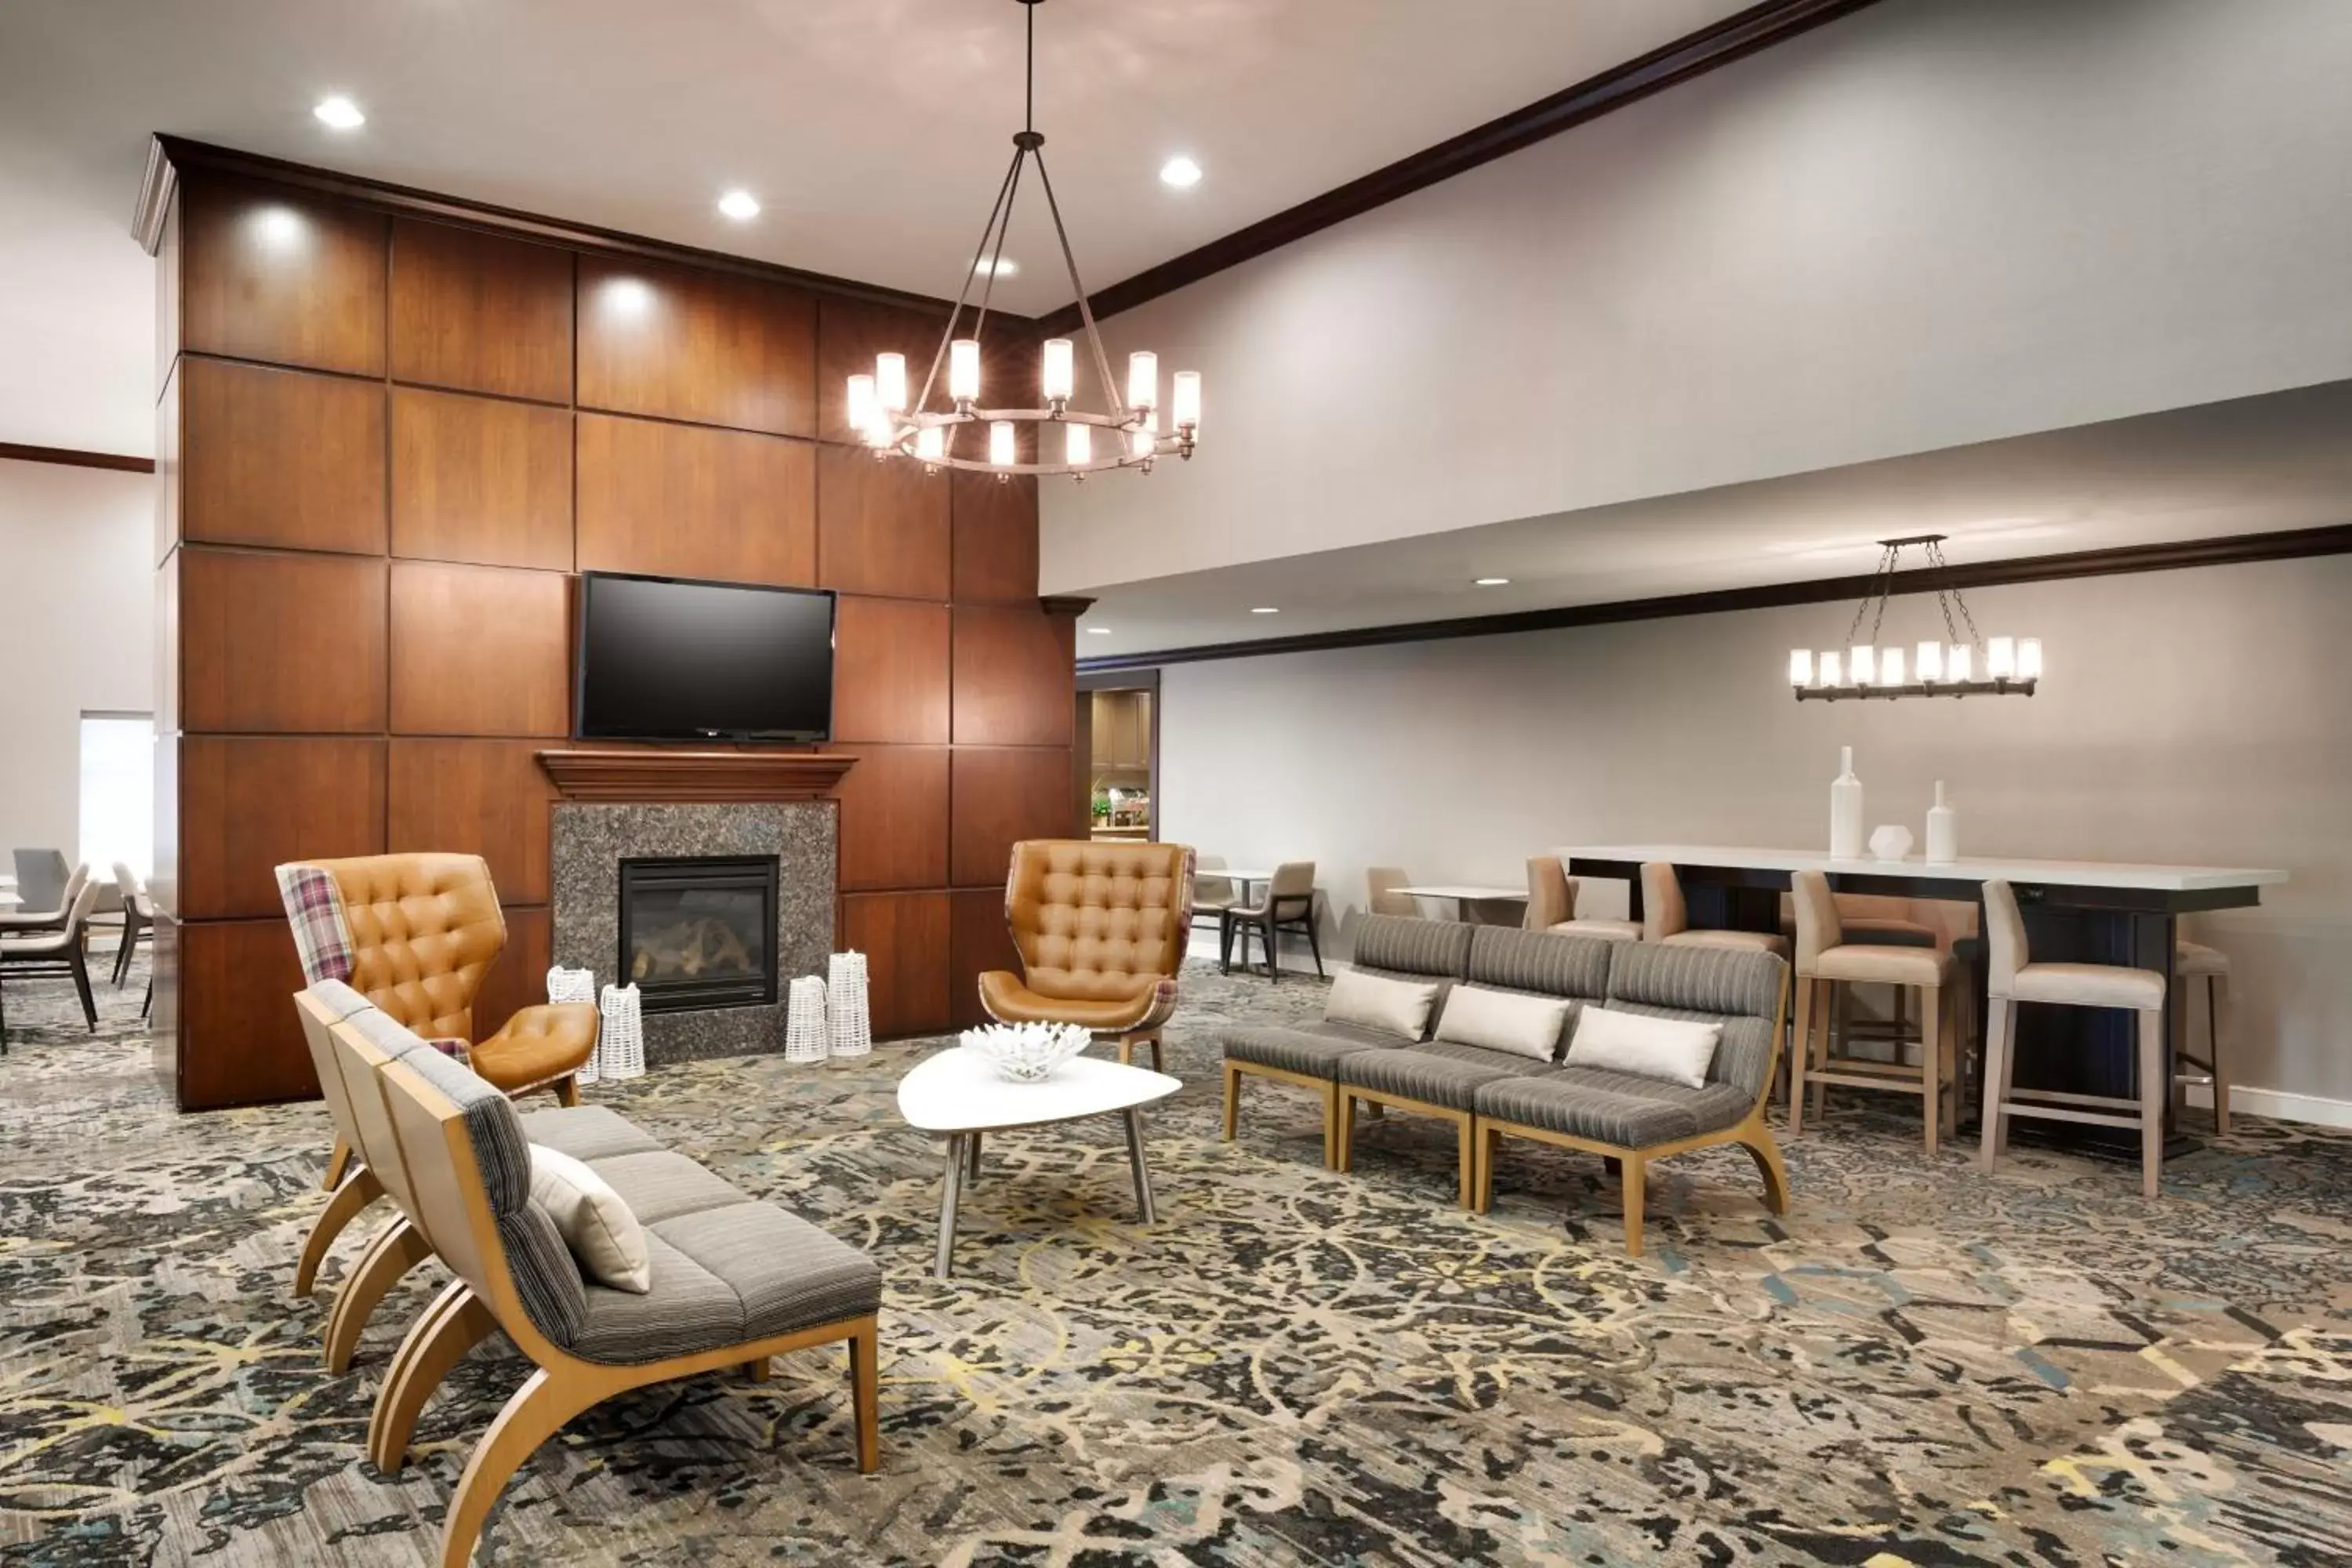 Lobby or reception in Residence Inn by Marriott Houston I-10 West/Park Row